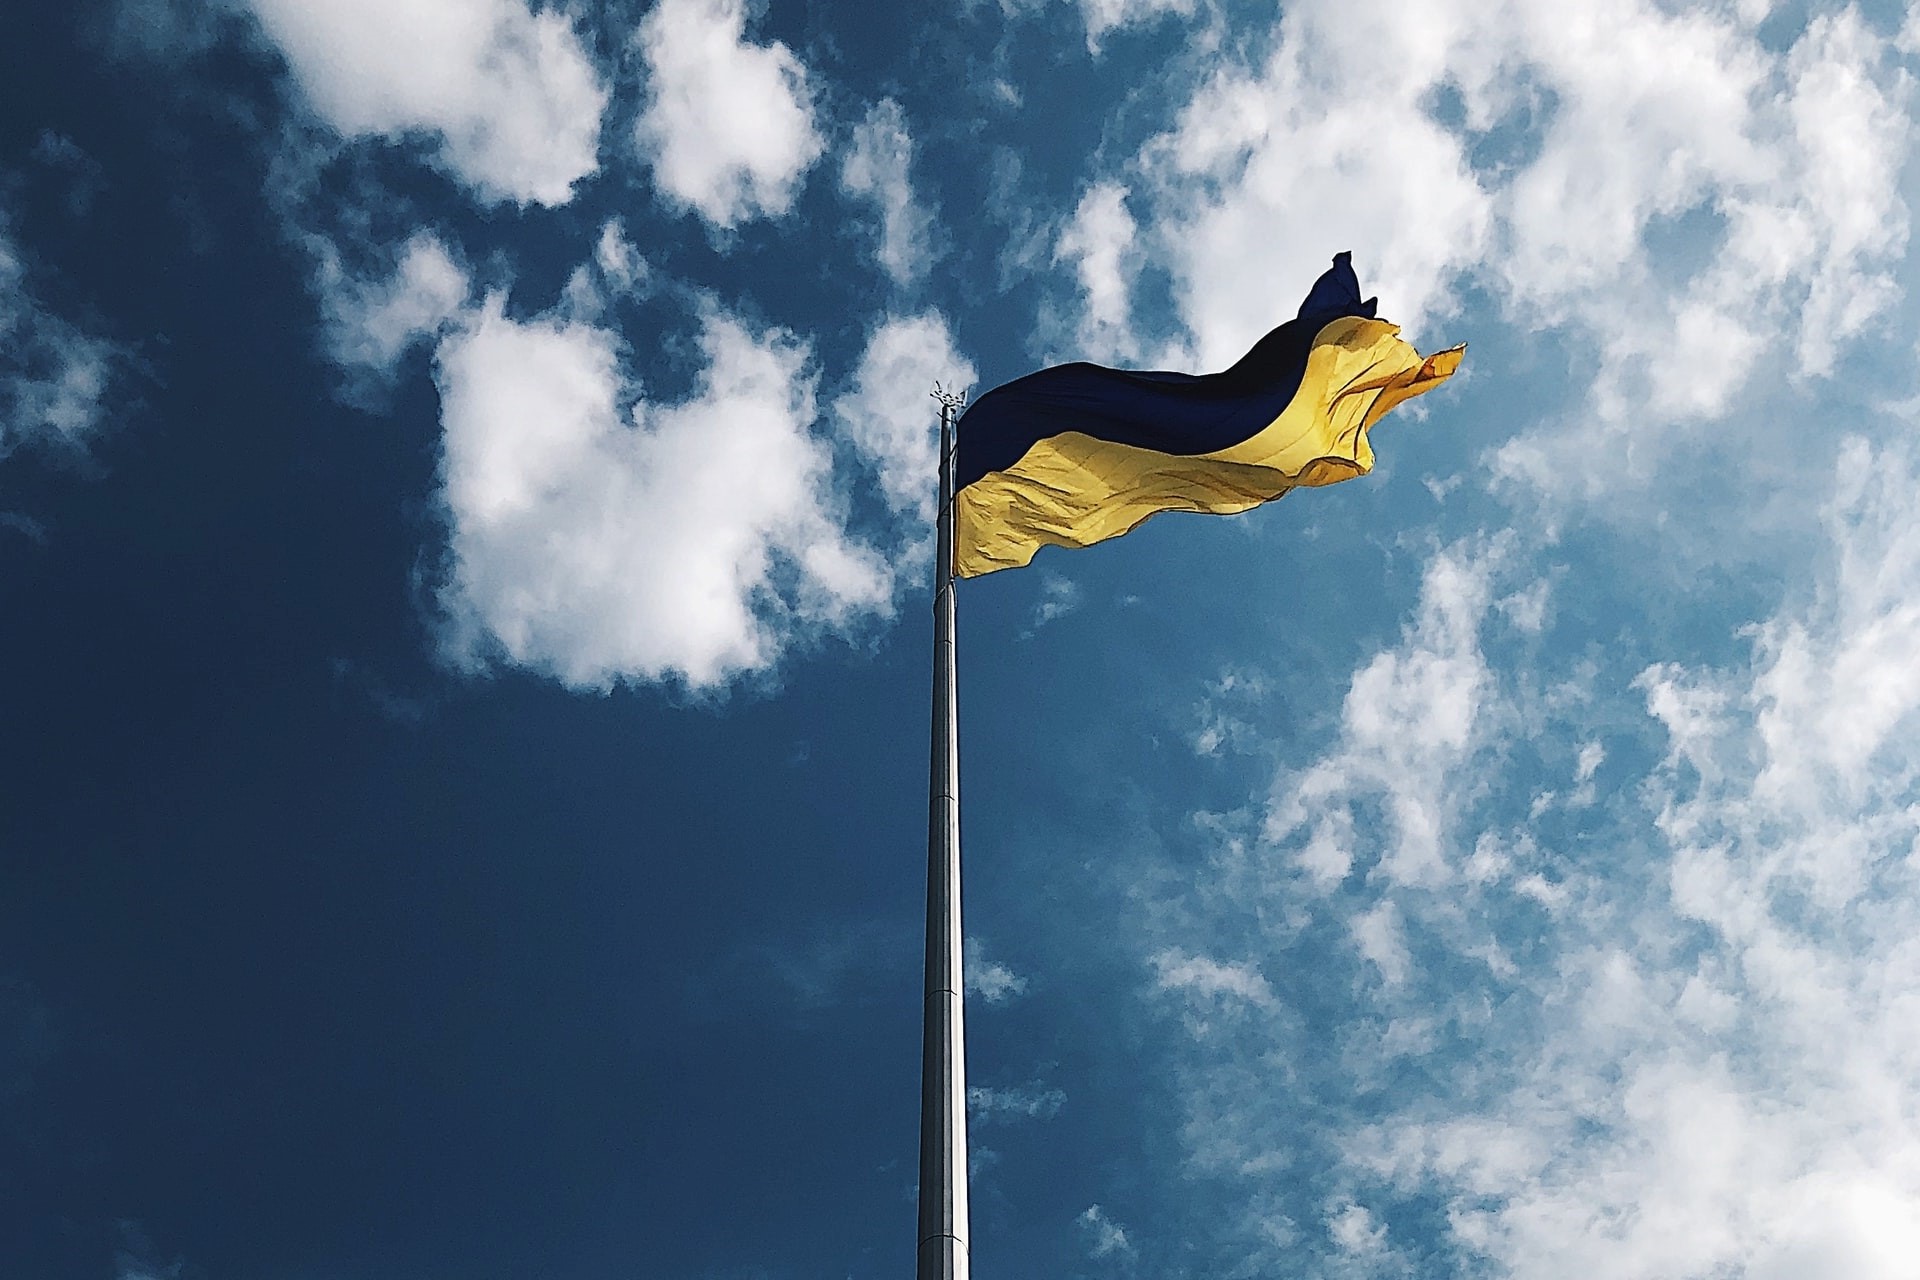 Ukraine flag blowing in wind